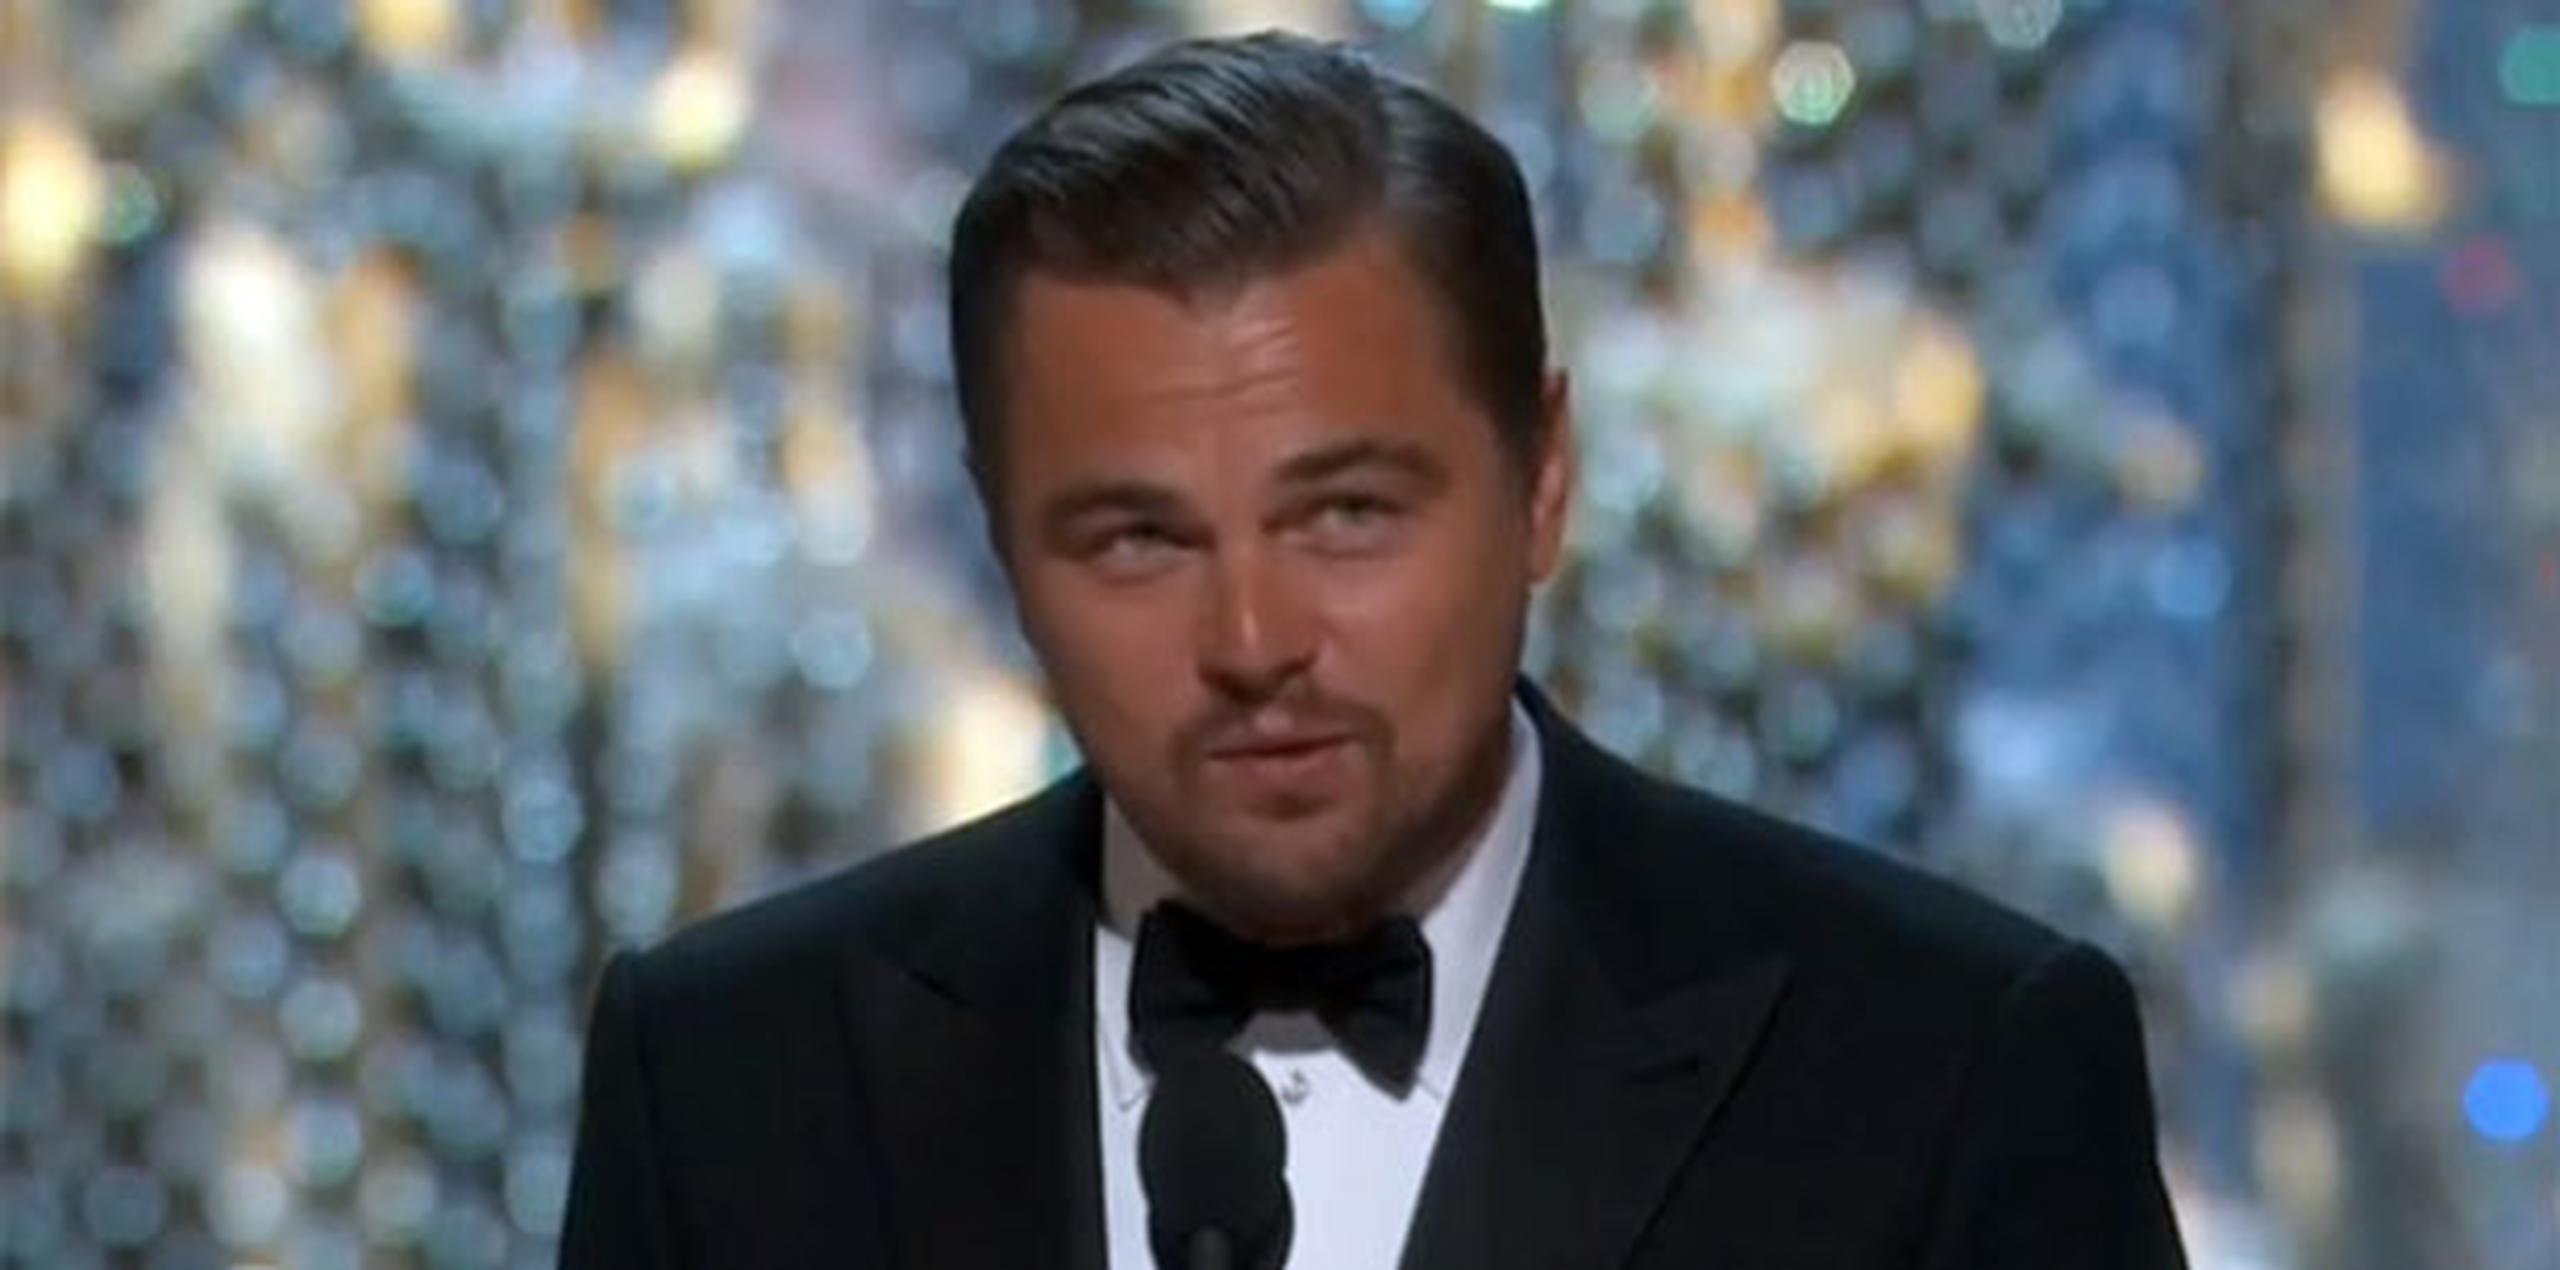 DiCaprio animó al mundo a "trabajar" para afrontar el problema del calentamiento global en su discurso.